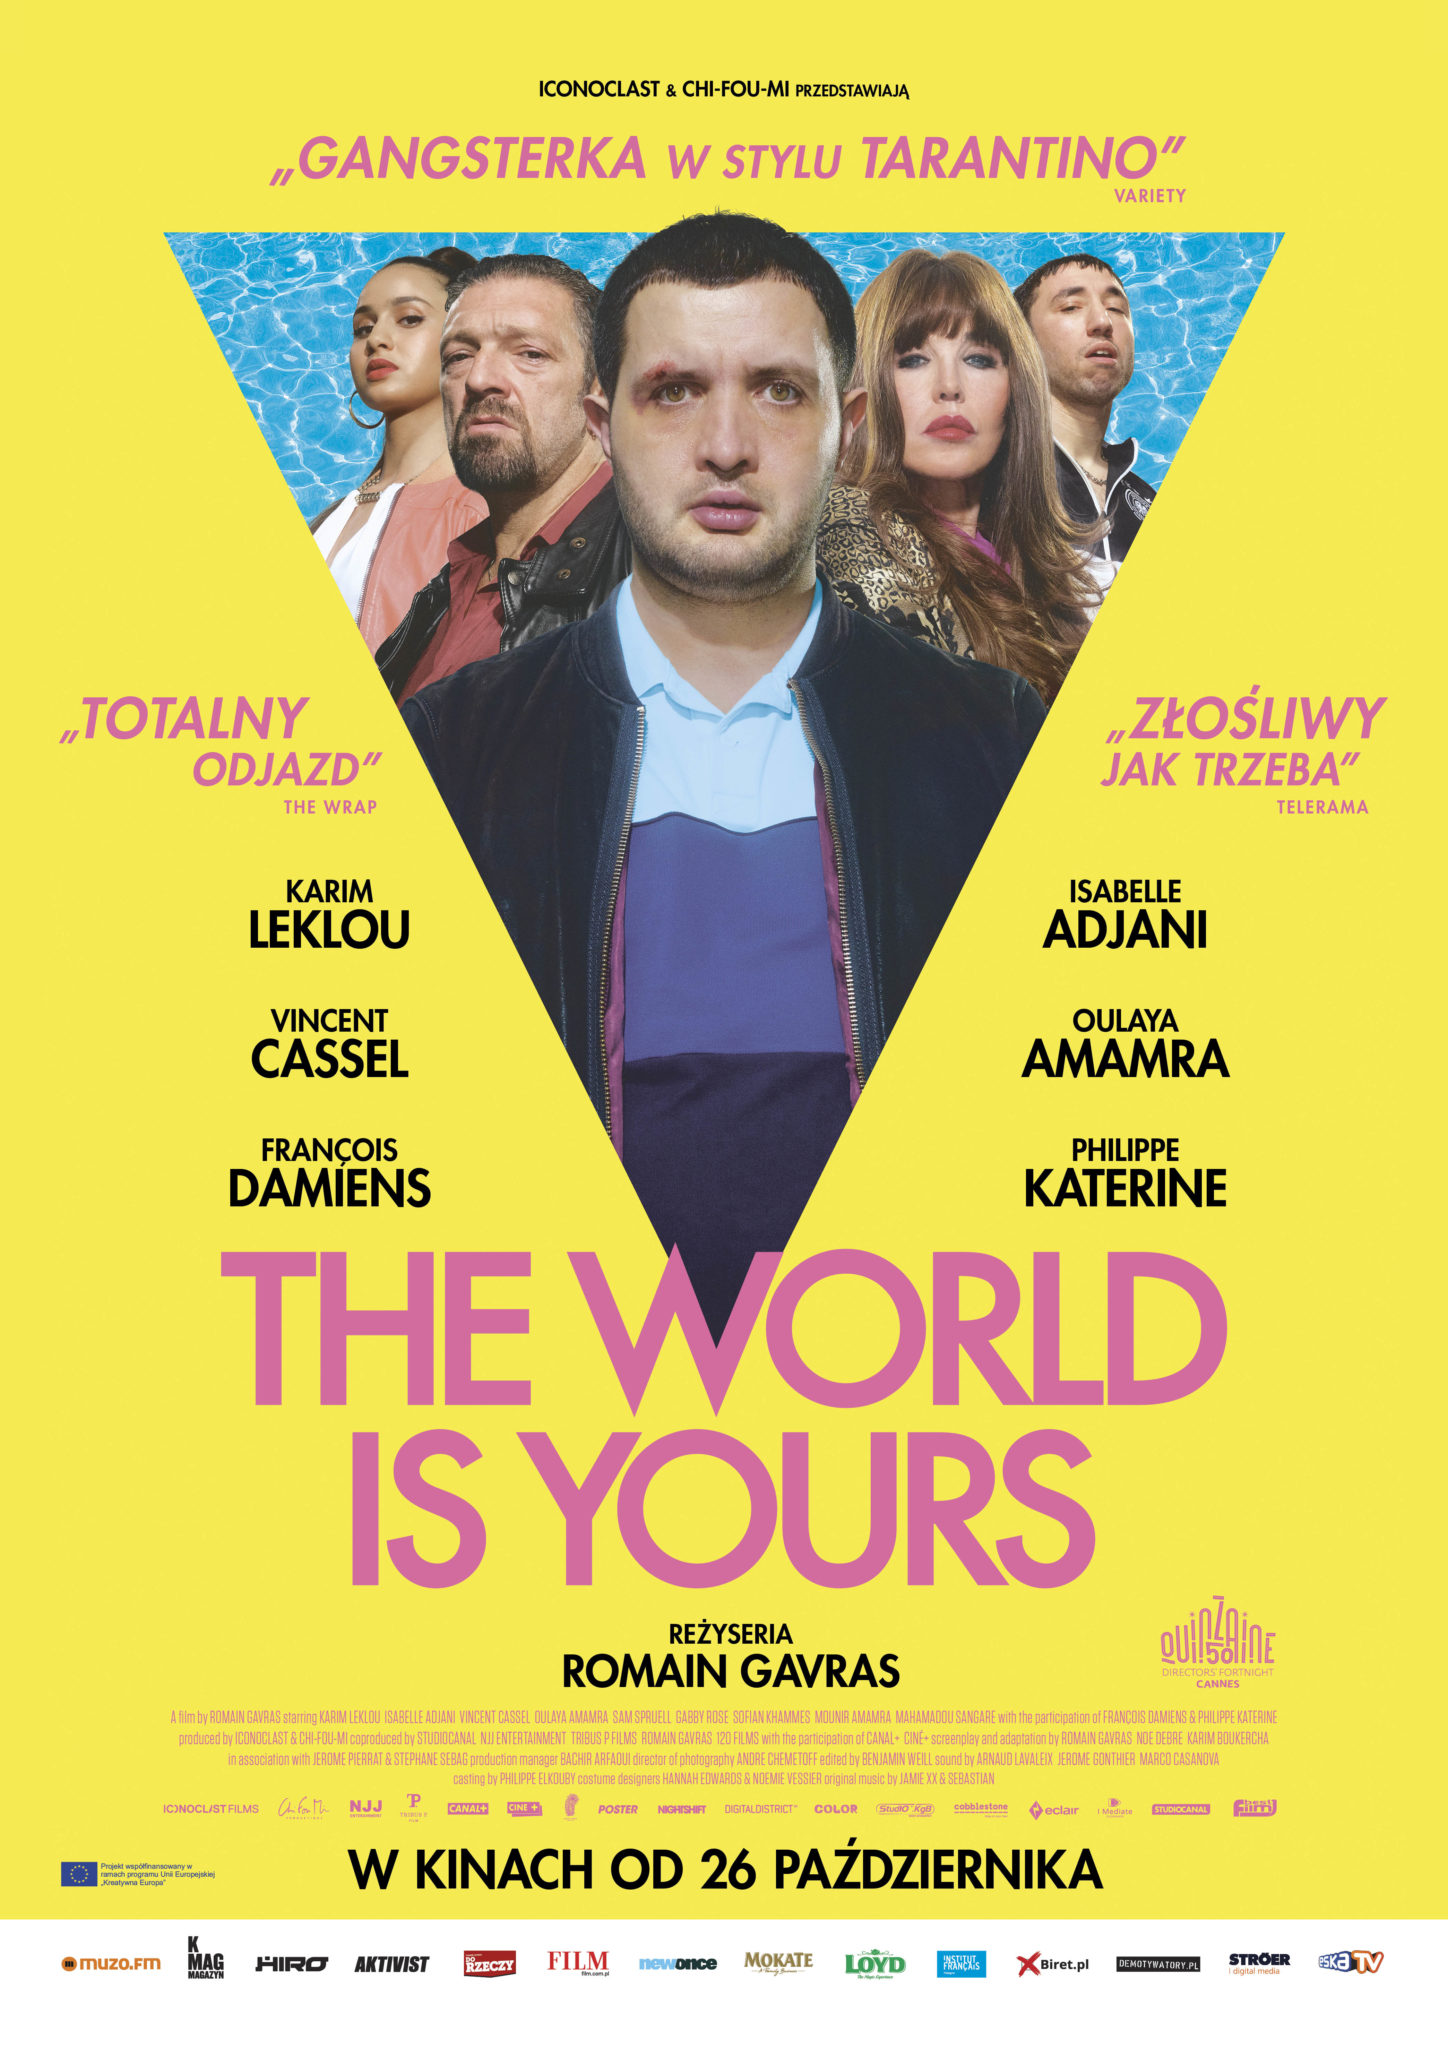 THE WORLDISYOURS B1 5 prev Gangsterka w stylu Tarantino: film „The World Is Yours” wchodzi do kin [KONKURS]